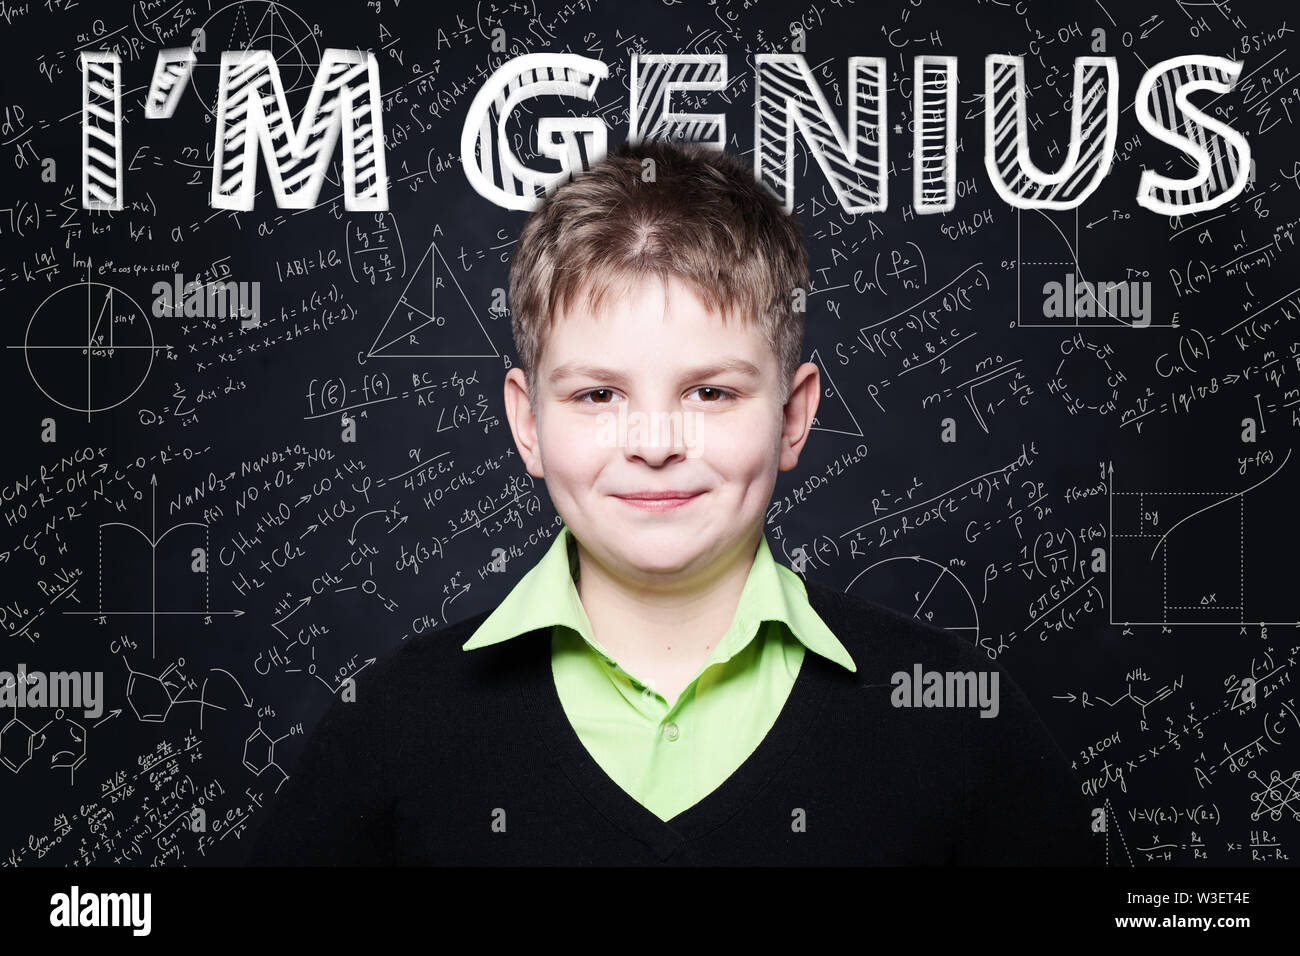 Glückliches Kind student lächelnd auf blackboard Hintergrund mit Wissenschaft und Mathematik Formel Stockfoto